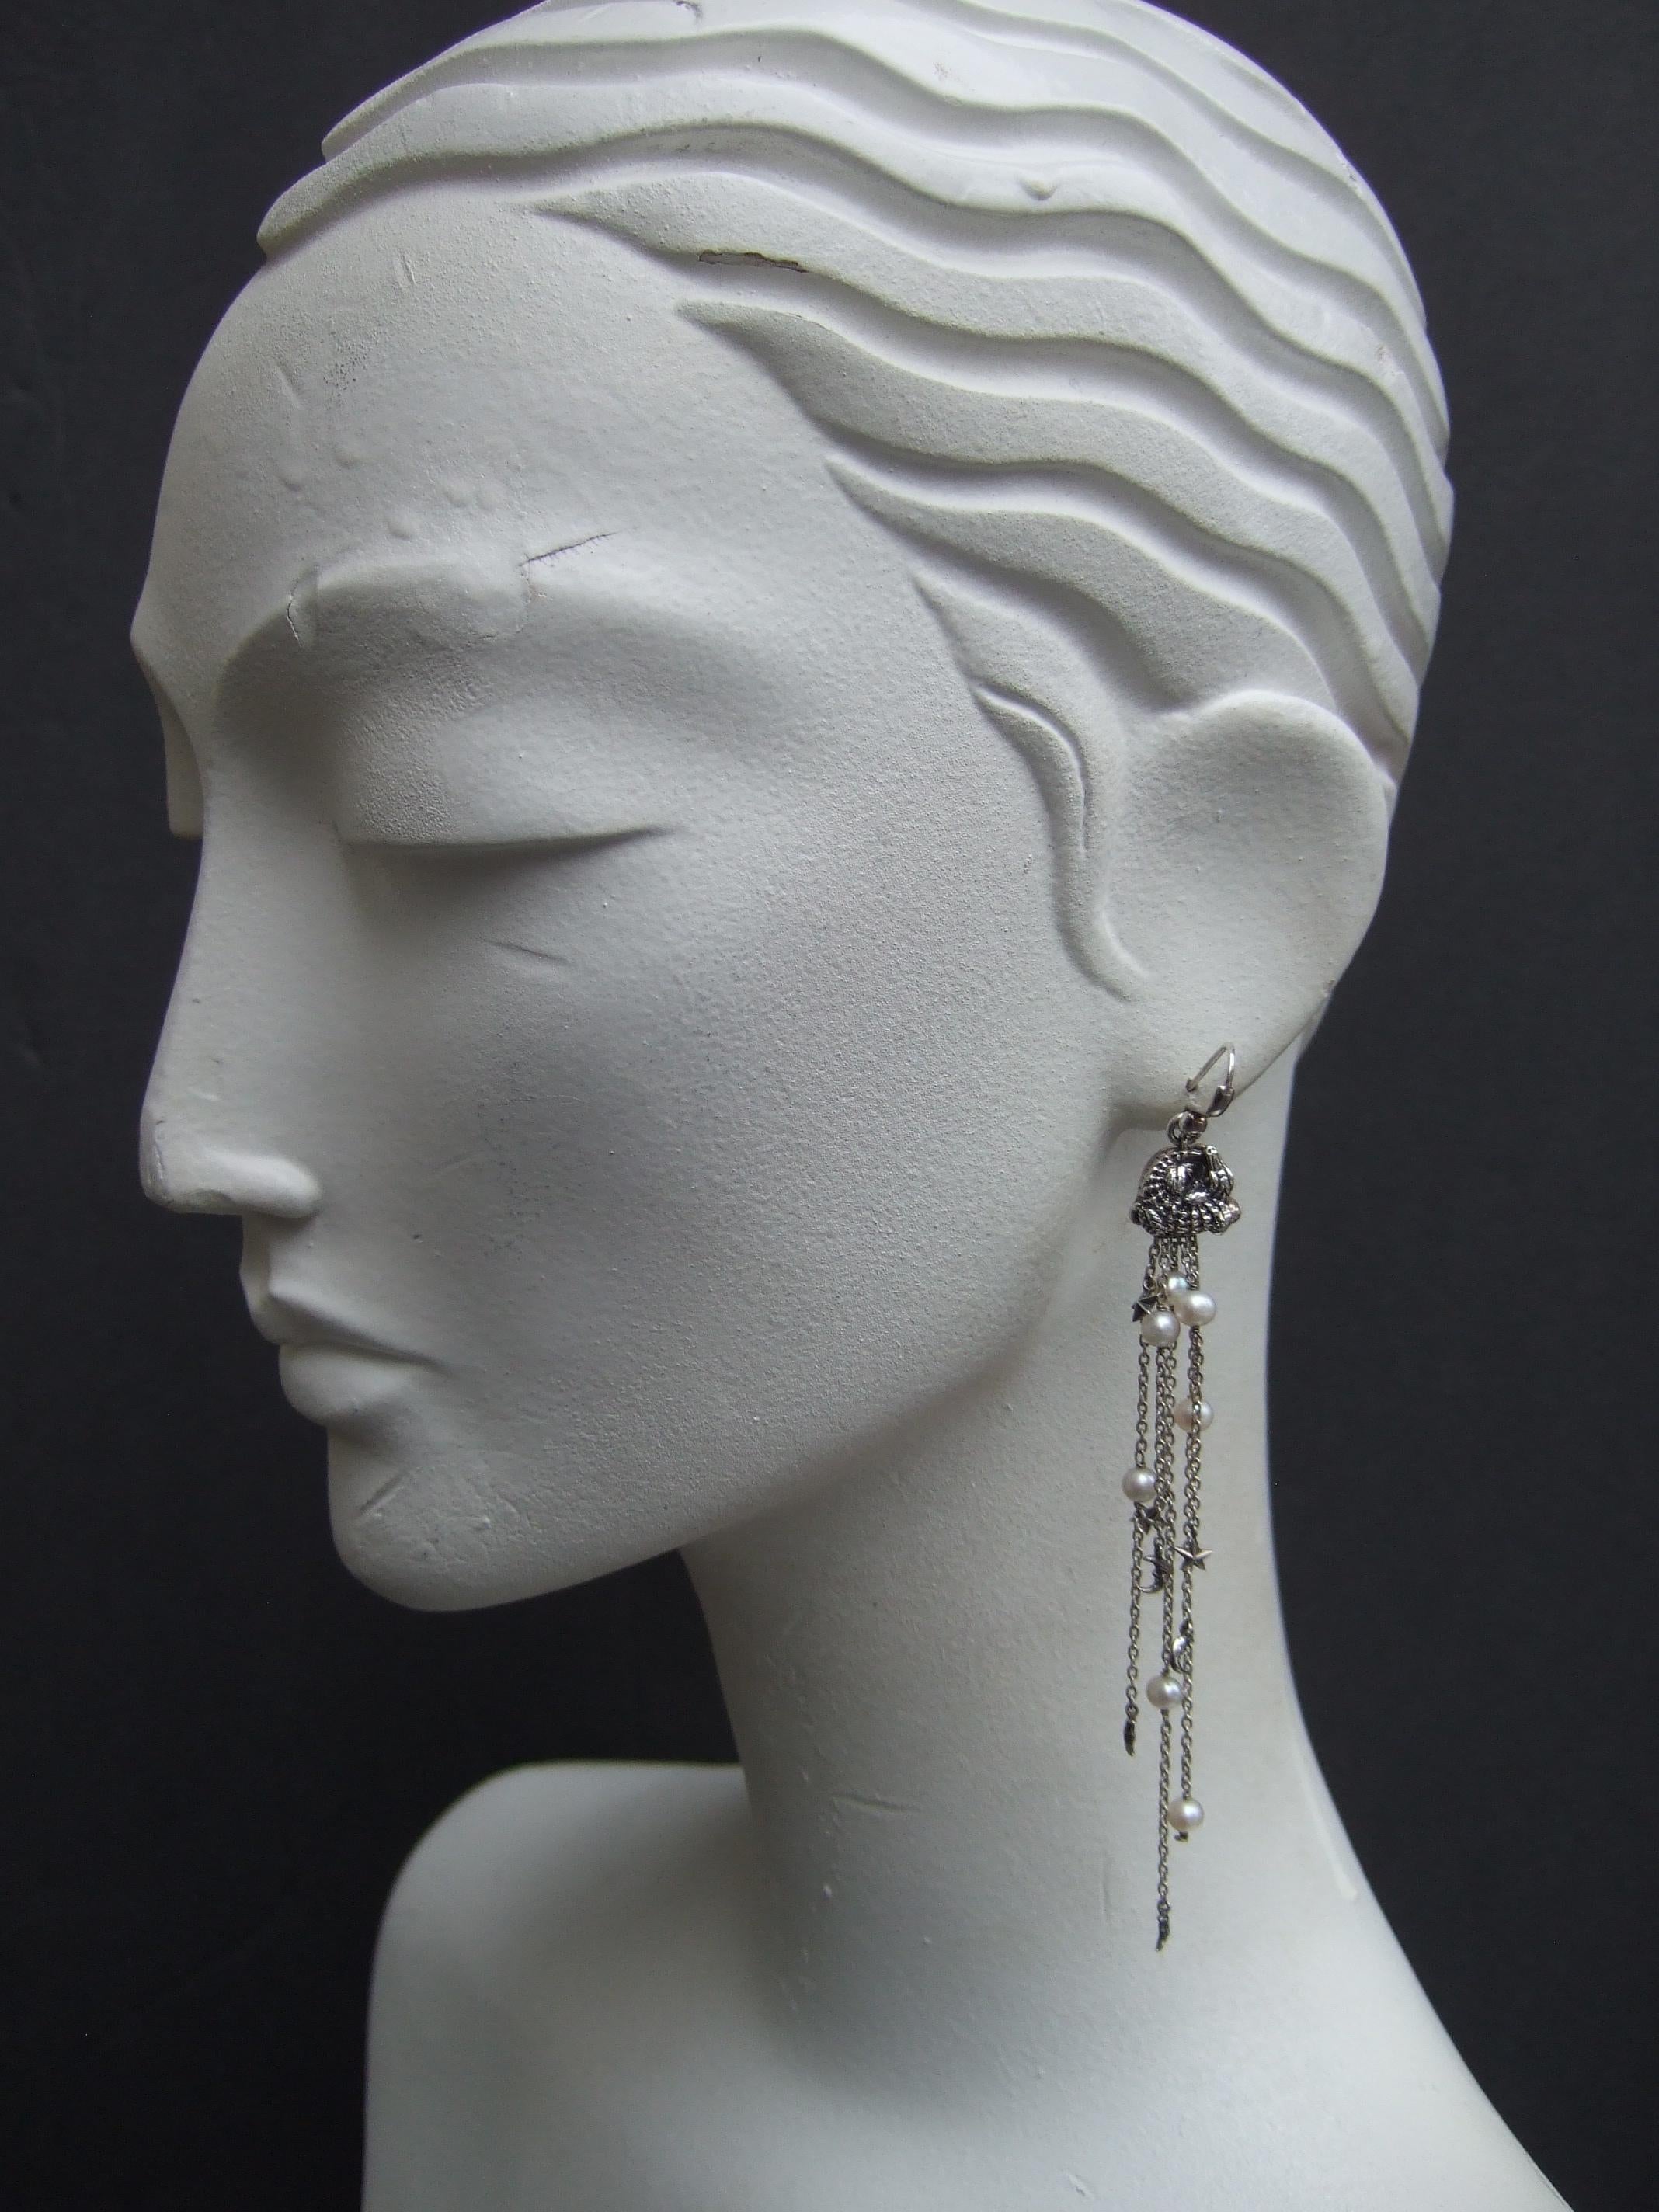 Bead Barry Kieselstein-Cord Sterling Silver Dangling Charm Statement Earrings 2004 For Sale